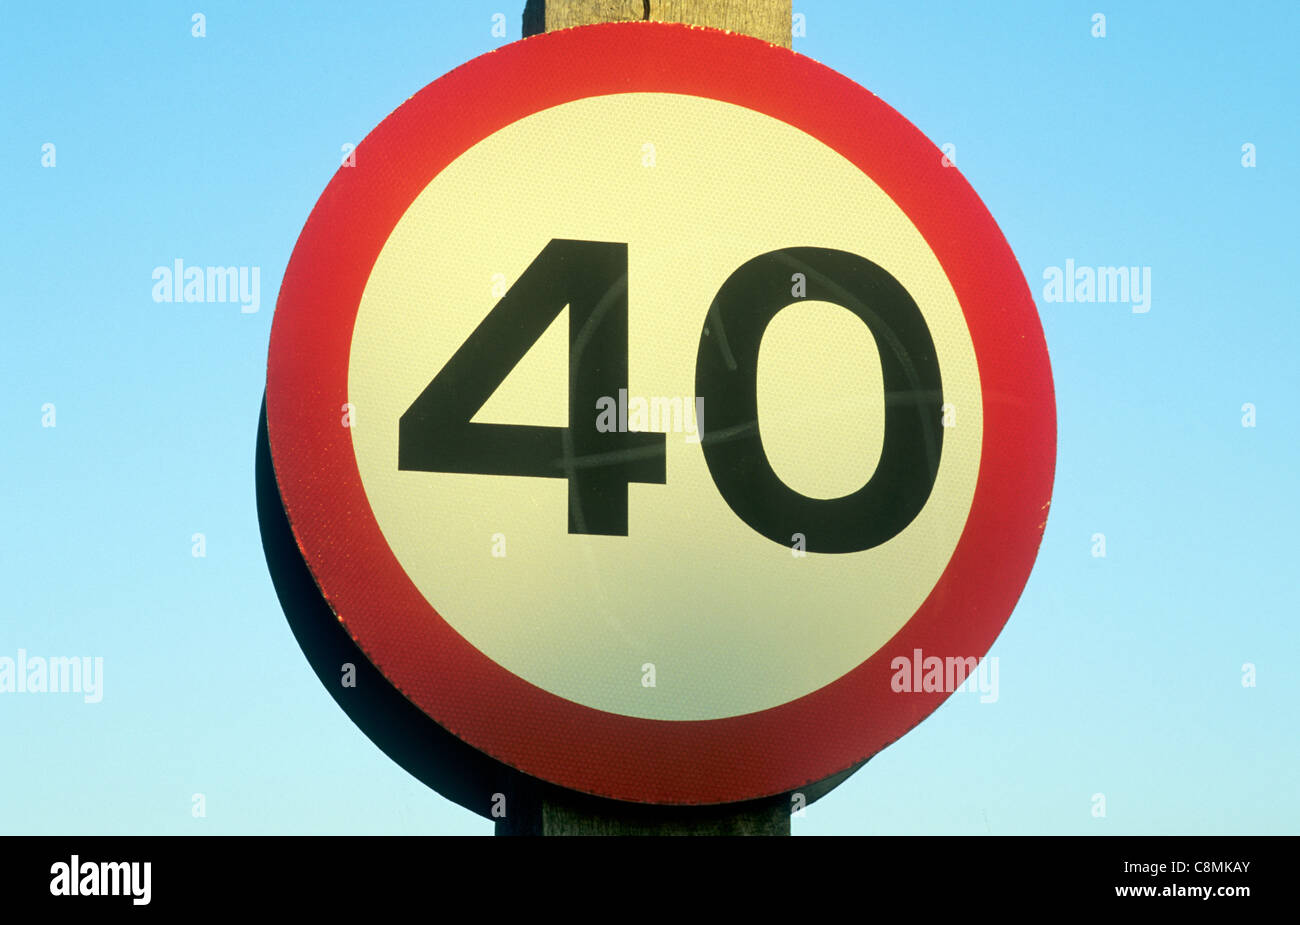 40 km/h Höchstgeschwindigkeit Zeichen, UK England englische Autofahren Geschwindigkeitsbegrenzungen Einschränkung am Straßenrand vierzig Meilen pro Stunde begrenzt, Großbritannien Stockfoto